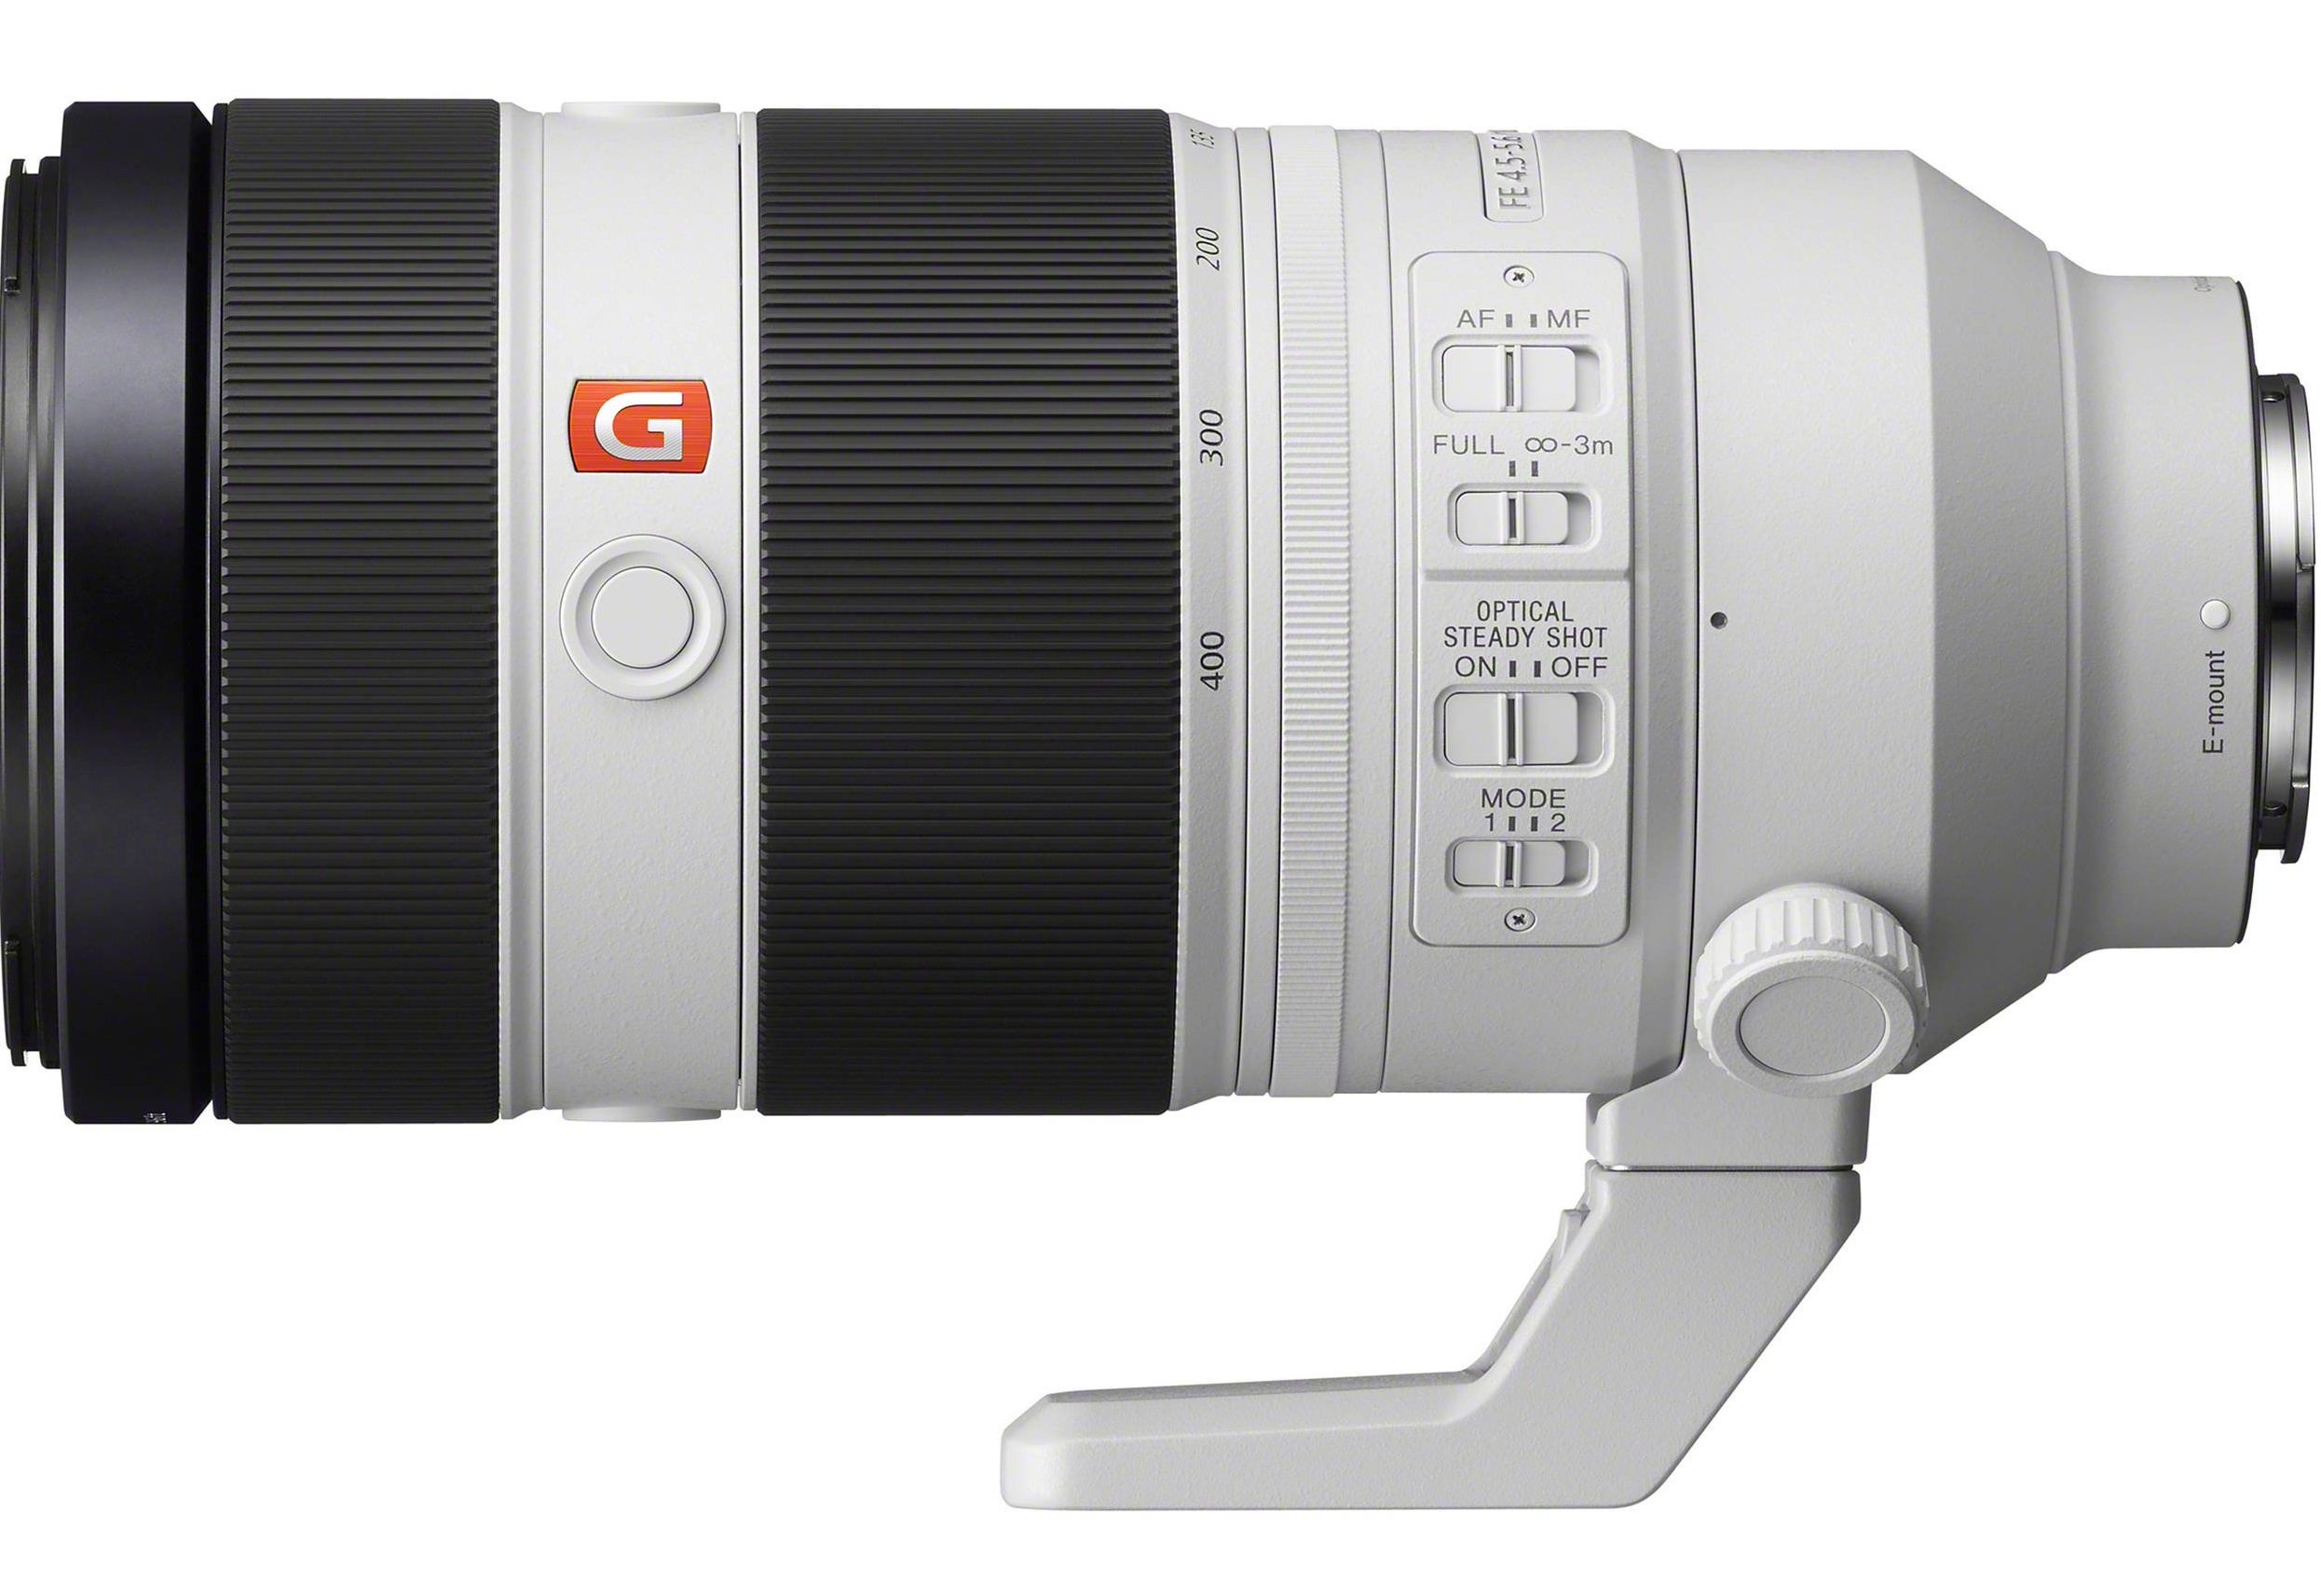 Sony FE 100-400mm f/4.5-5.6 GM OSS